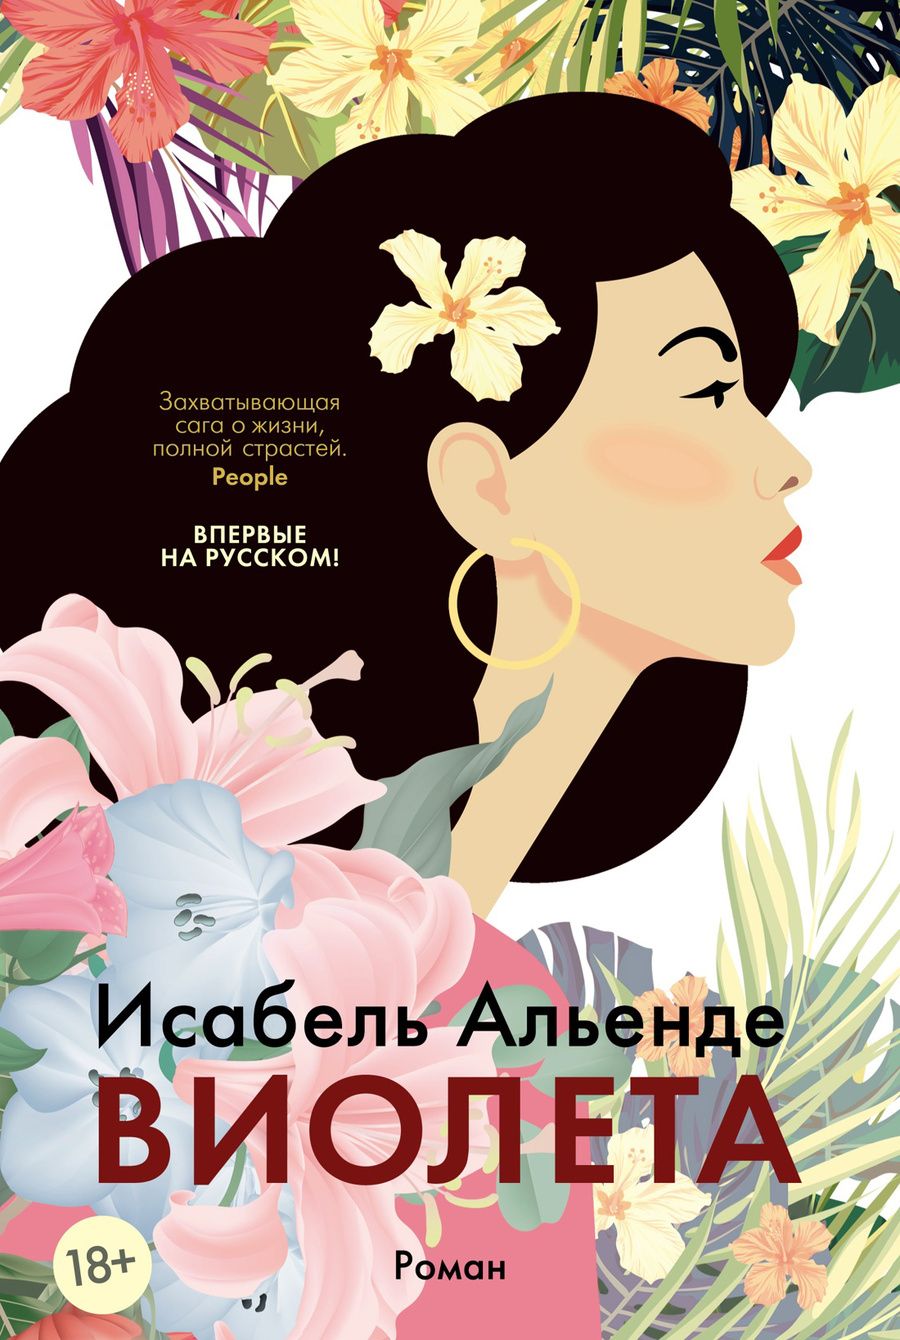 Обложка книги "Альенде: Виолета"